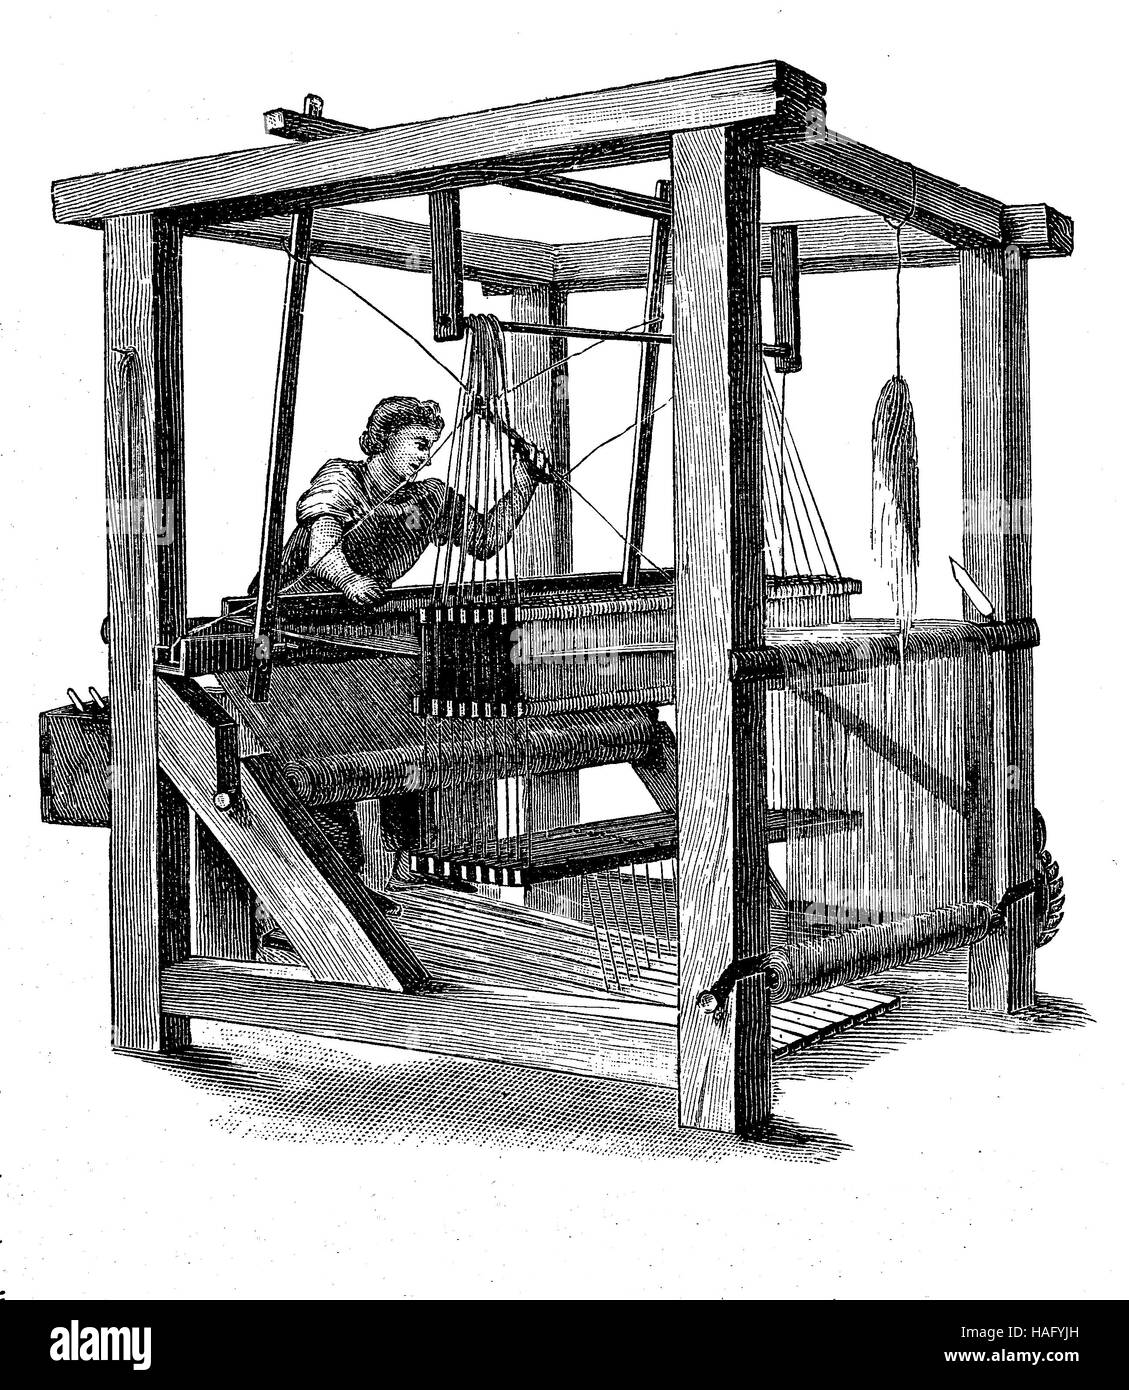 Ein Webstuhl, ein Gerät zum Weben von Tuch und Gobelin., Holzschnitt aus dem Jahr 1880 Stockfoto